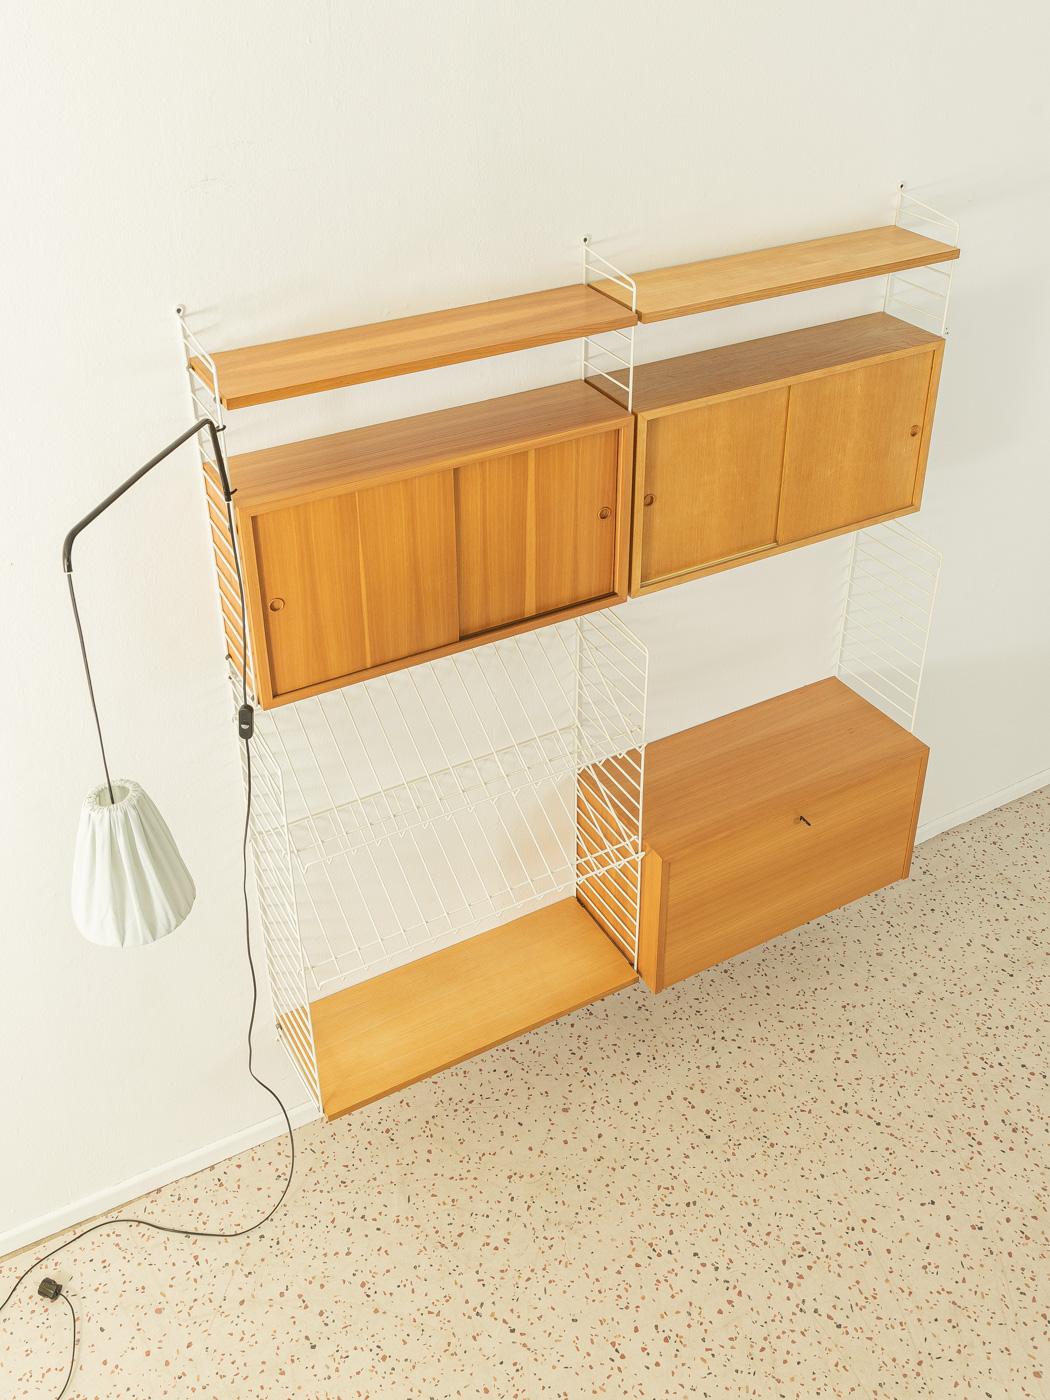 Mid-Century Modern Original String Design Shelving System, Designed by Nils Strinning, 1950s Sweden For Sale